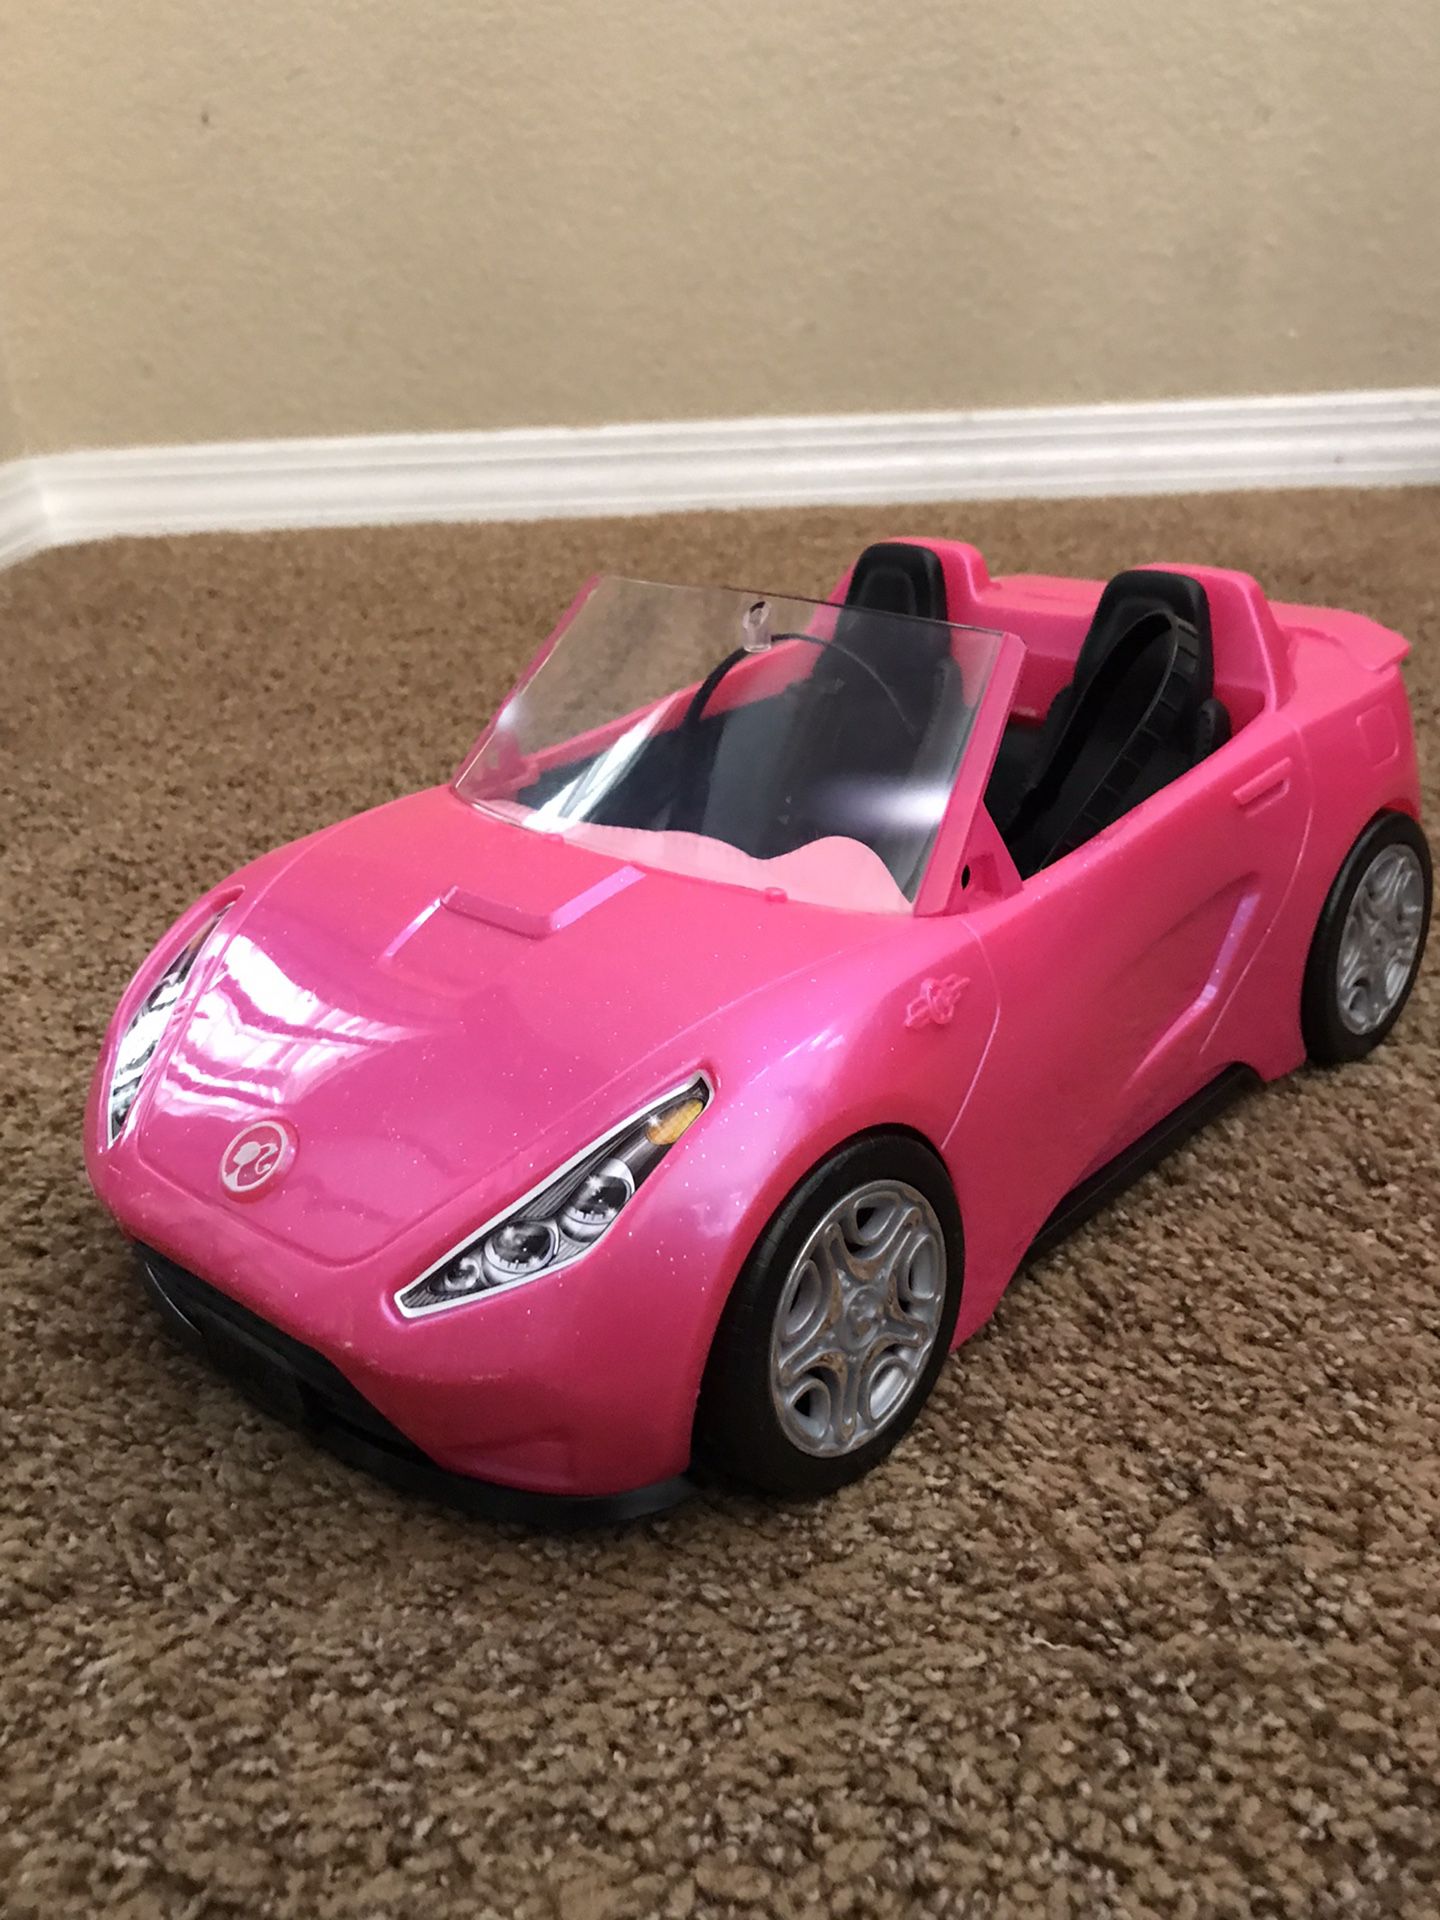 Barbie sized toy car